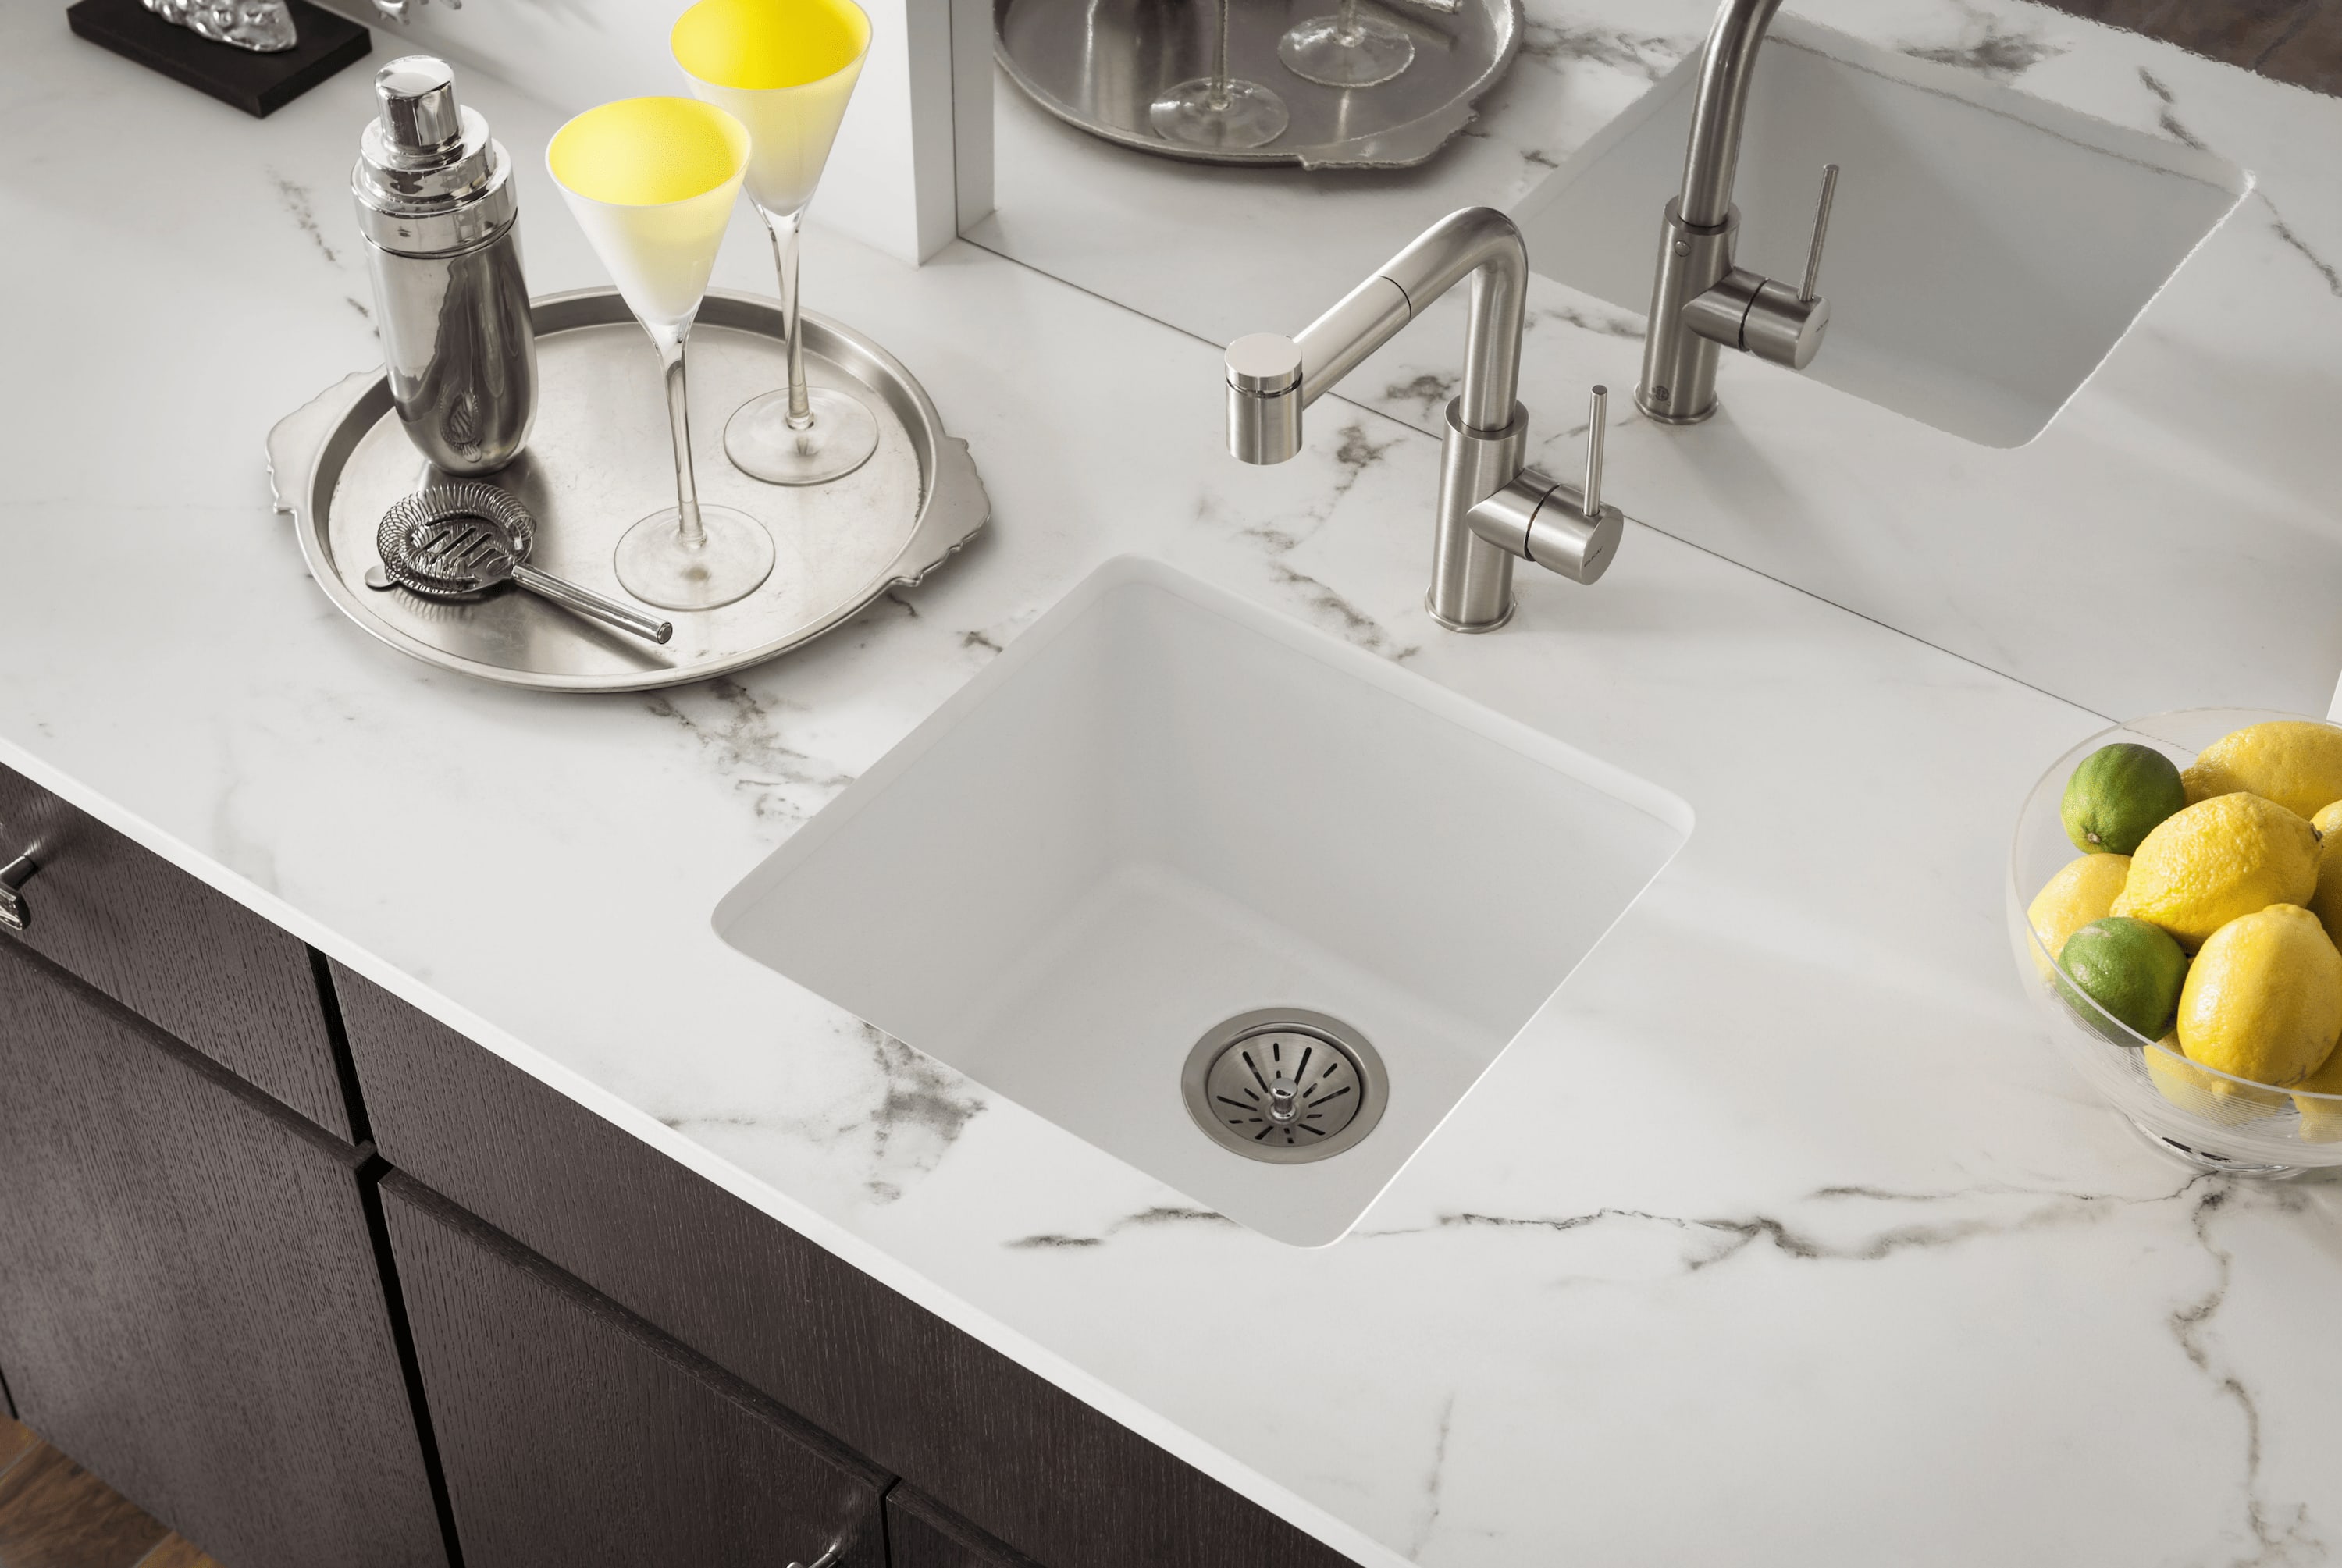 white quartz kitchen sink